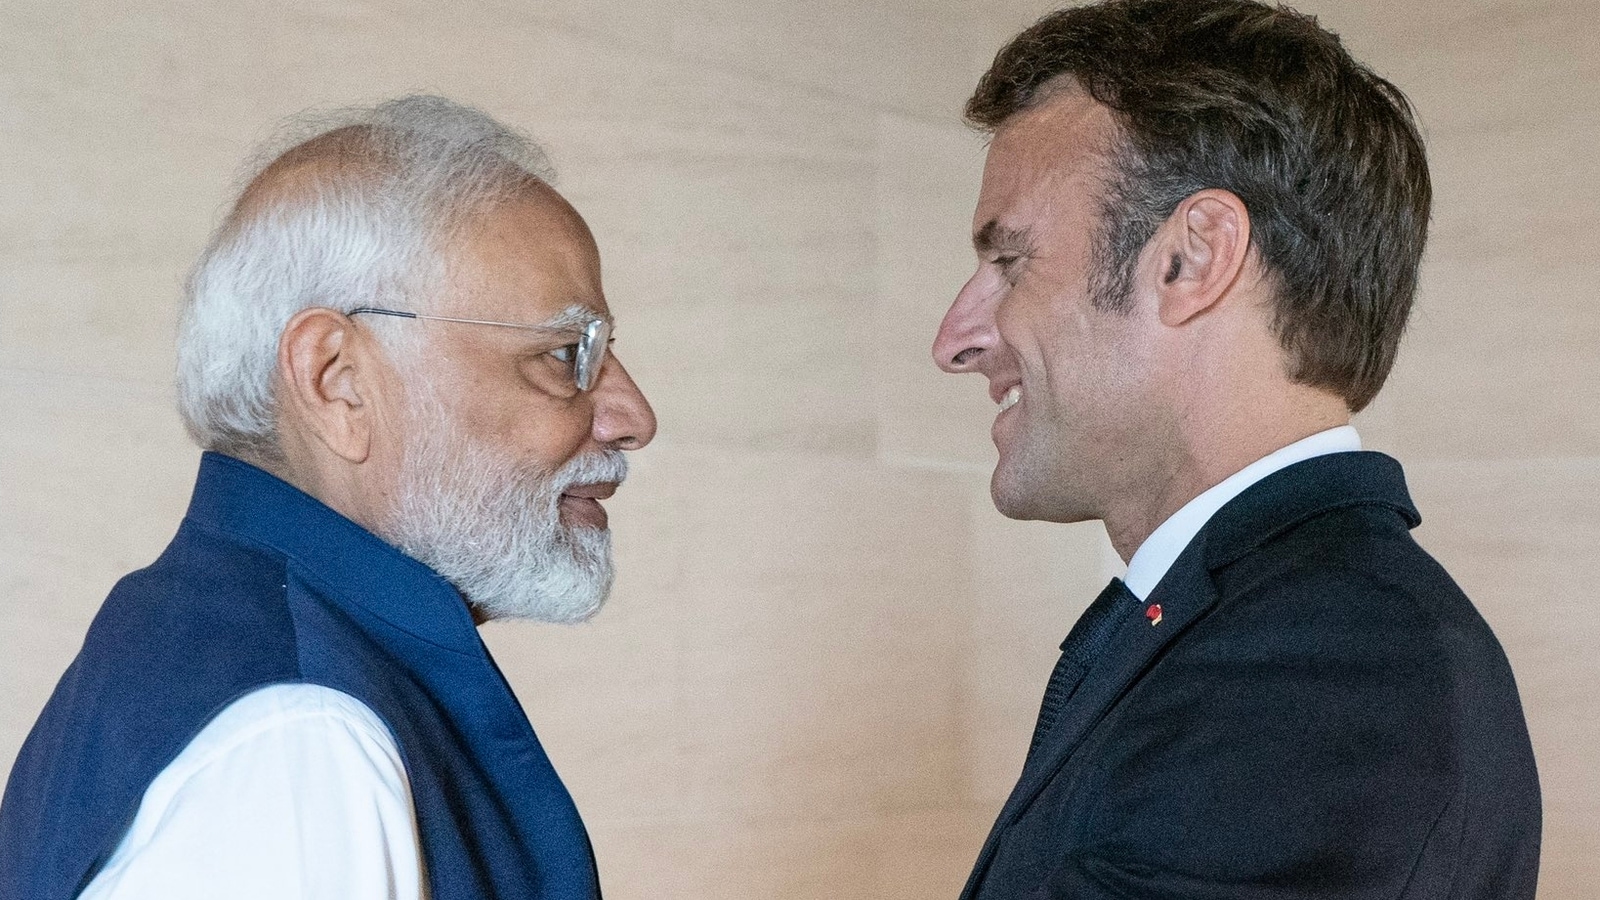 el tuit de Macron «una tierra…» cuando India toma el timón del G20;  y una mención de PM |  Últimas noticias indias